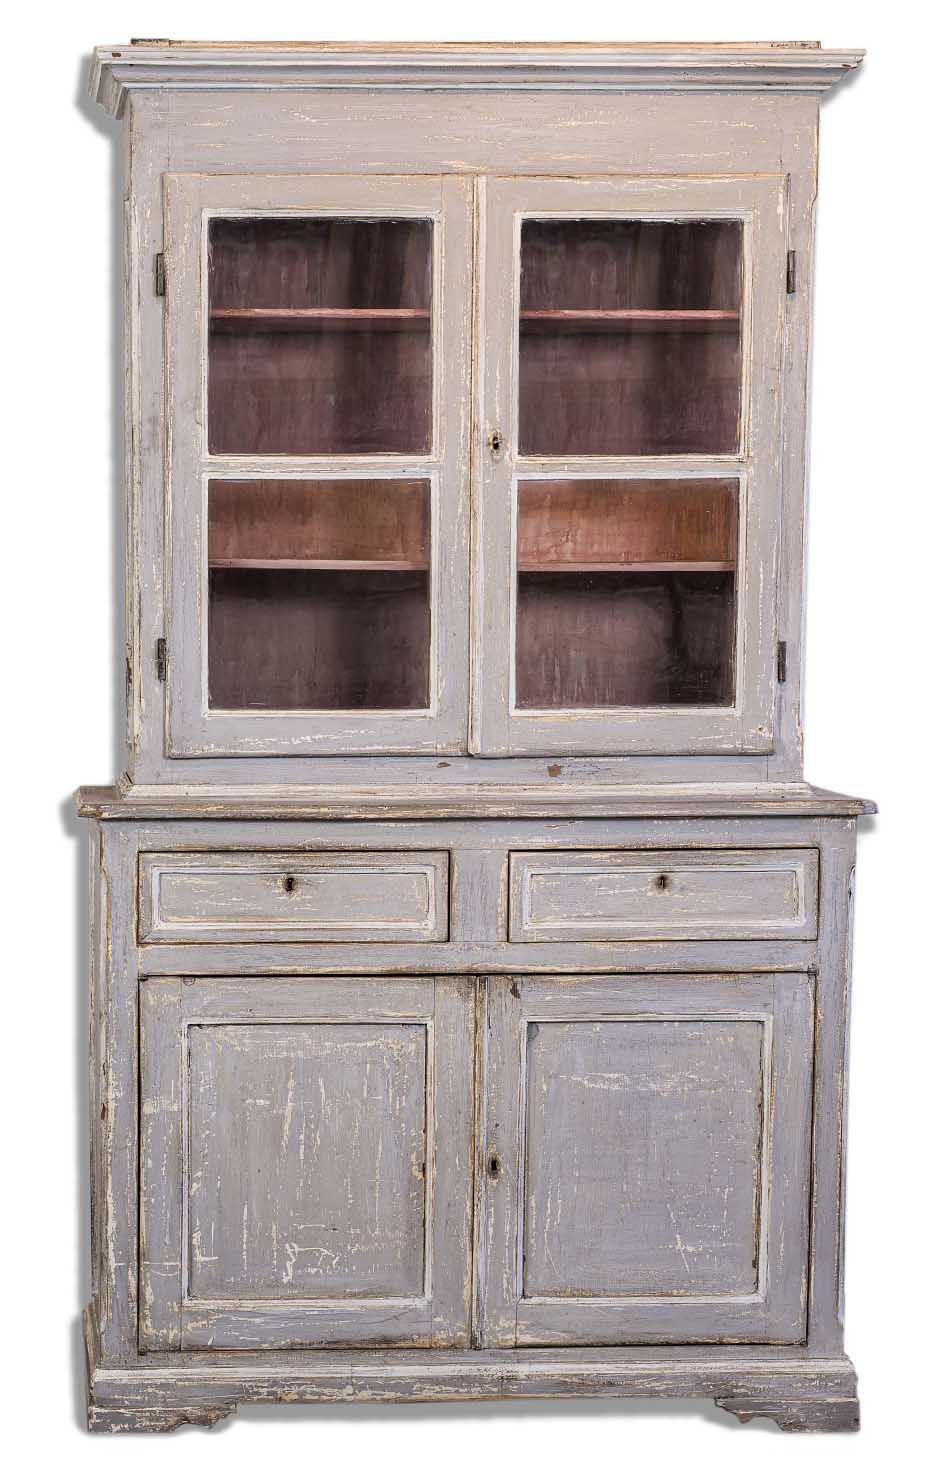 Null 双身餐具柜

19世纪末

灰色漆木，上半身带展示柜，下半身带两扇门和两个抽屉，模制底座

119x48.4x205厘米